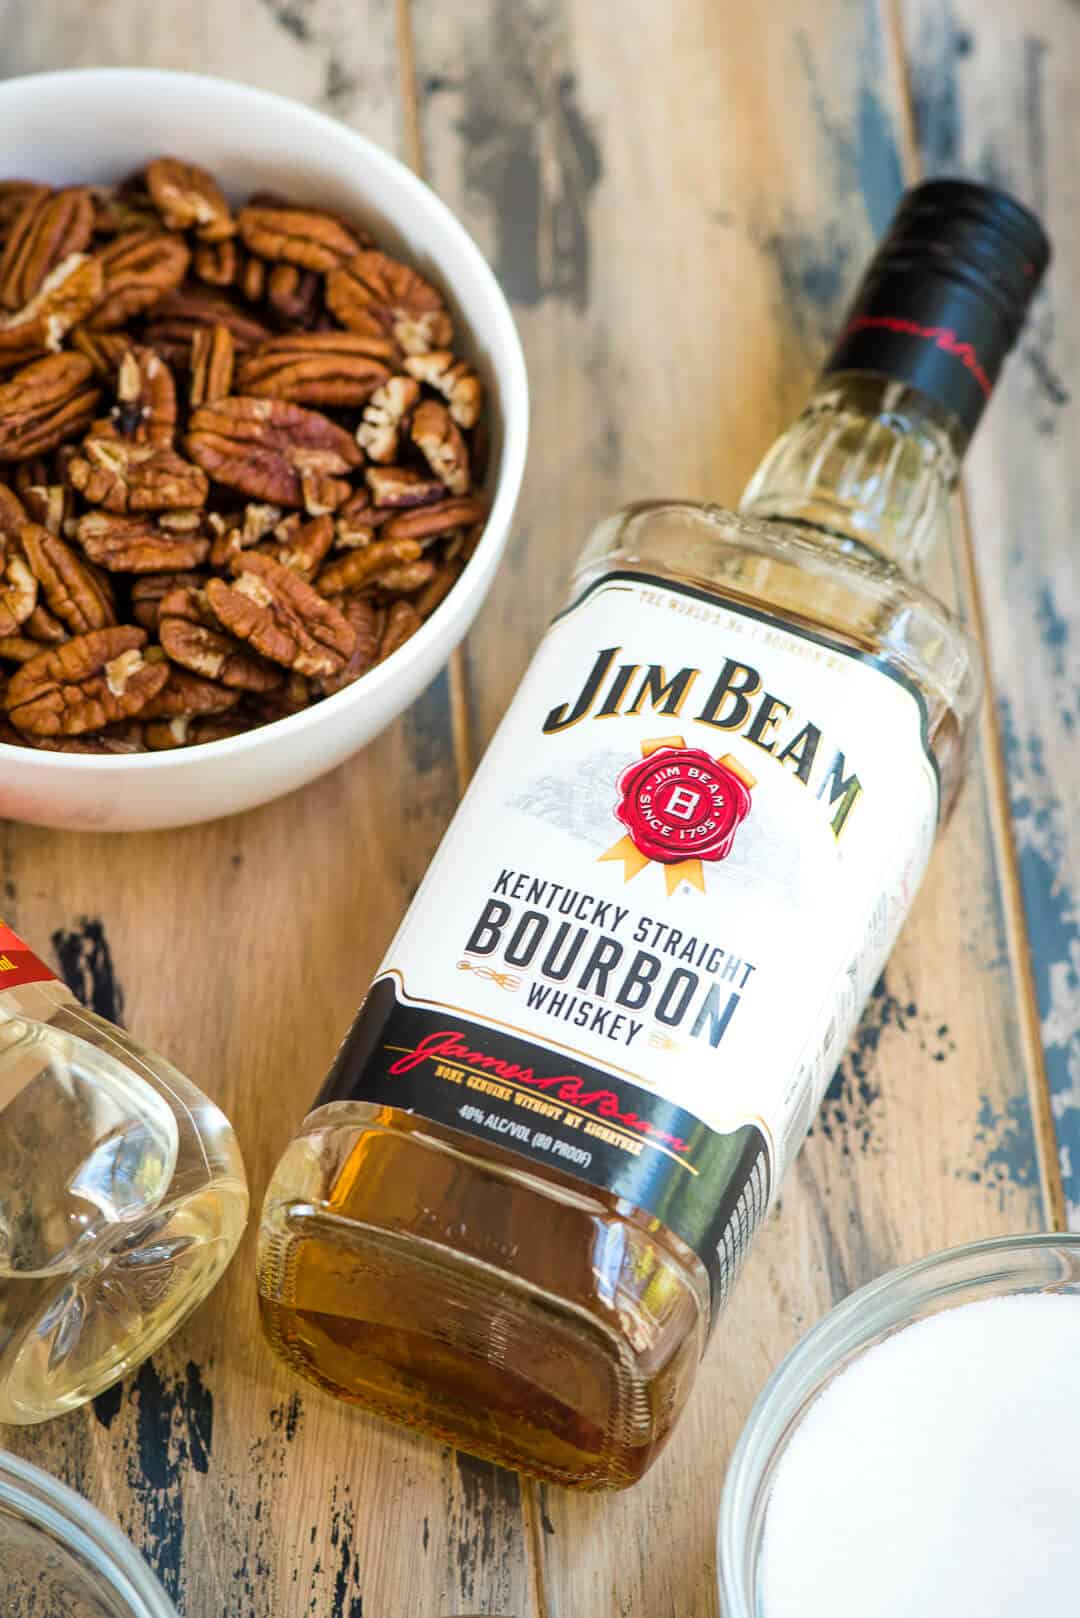 A bottle of Jim Beam Bourbon Whiskey.